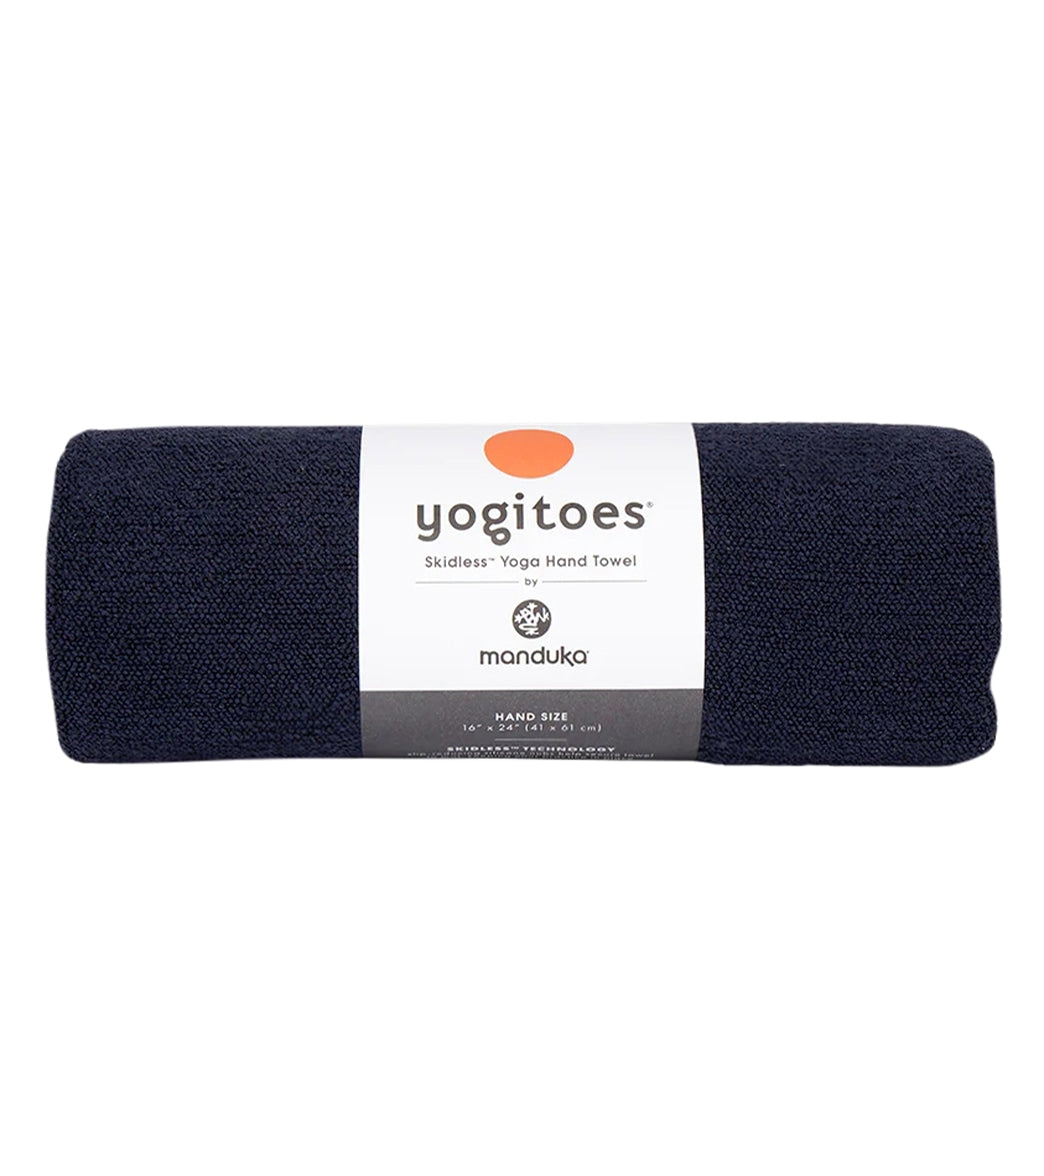 Manduka Yogitoes® Yoga Mat Towel, 71